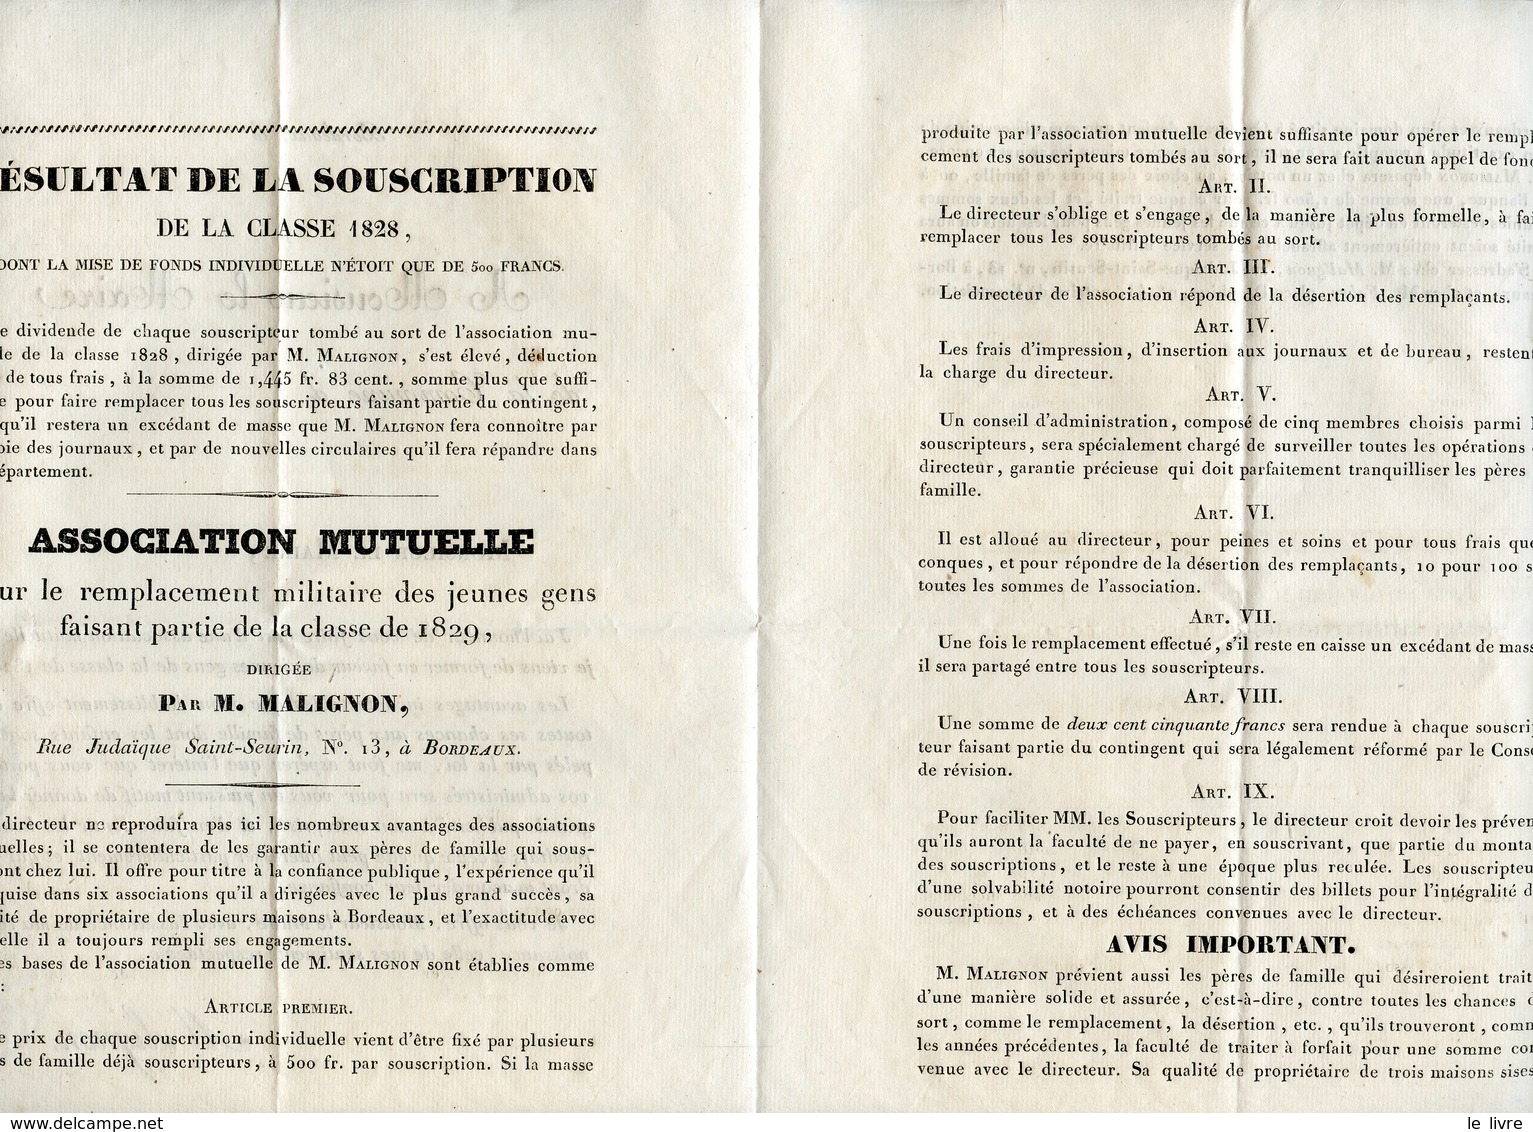 BORDEAUX 33 CIRCULAIRE PAR M. MALIGNON DE L'ASSOCIATION MUTUELLE POUR LE REMPLACEMENT DES JEUNES DE LA CLASSE 1829